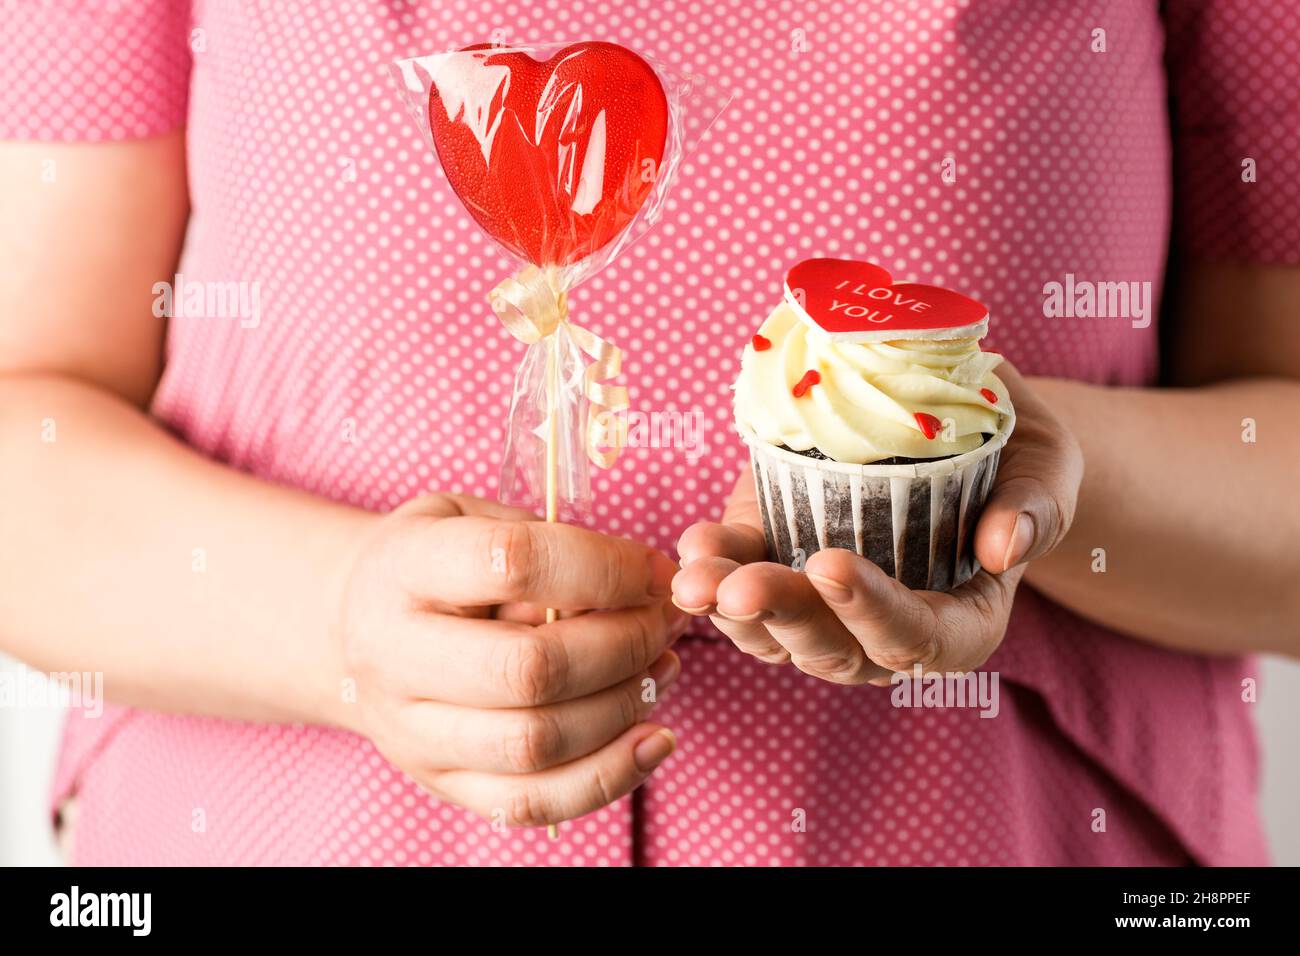 Fille en rose tient coeur en forme Cake avec l'inscription I Love You et rouge lolllipop.Cupcake en forme de coeur Banque D'Images